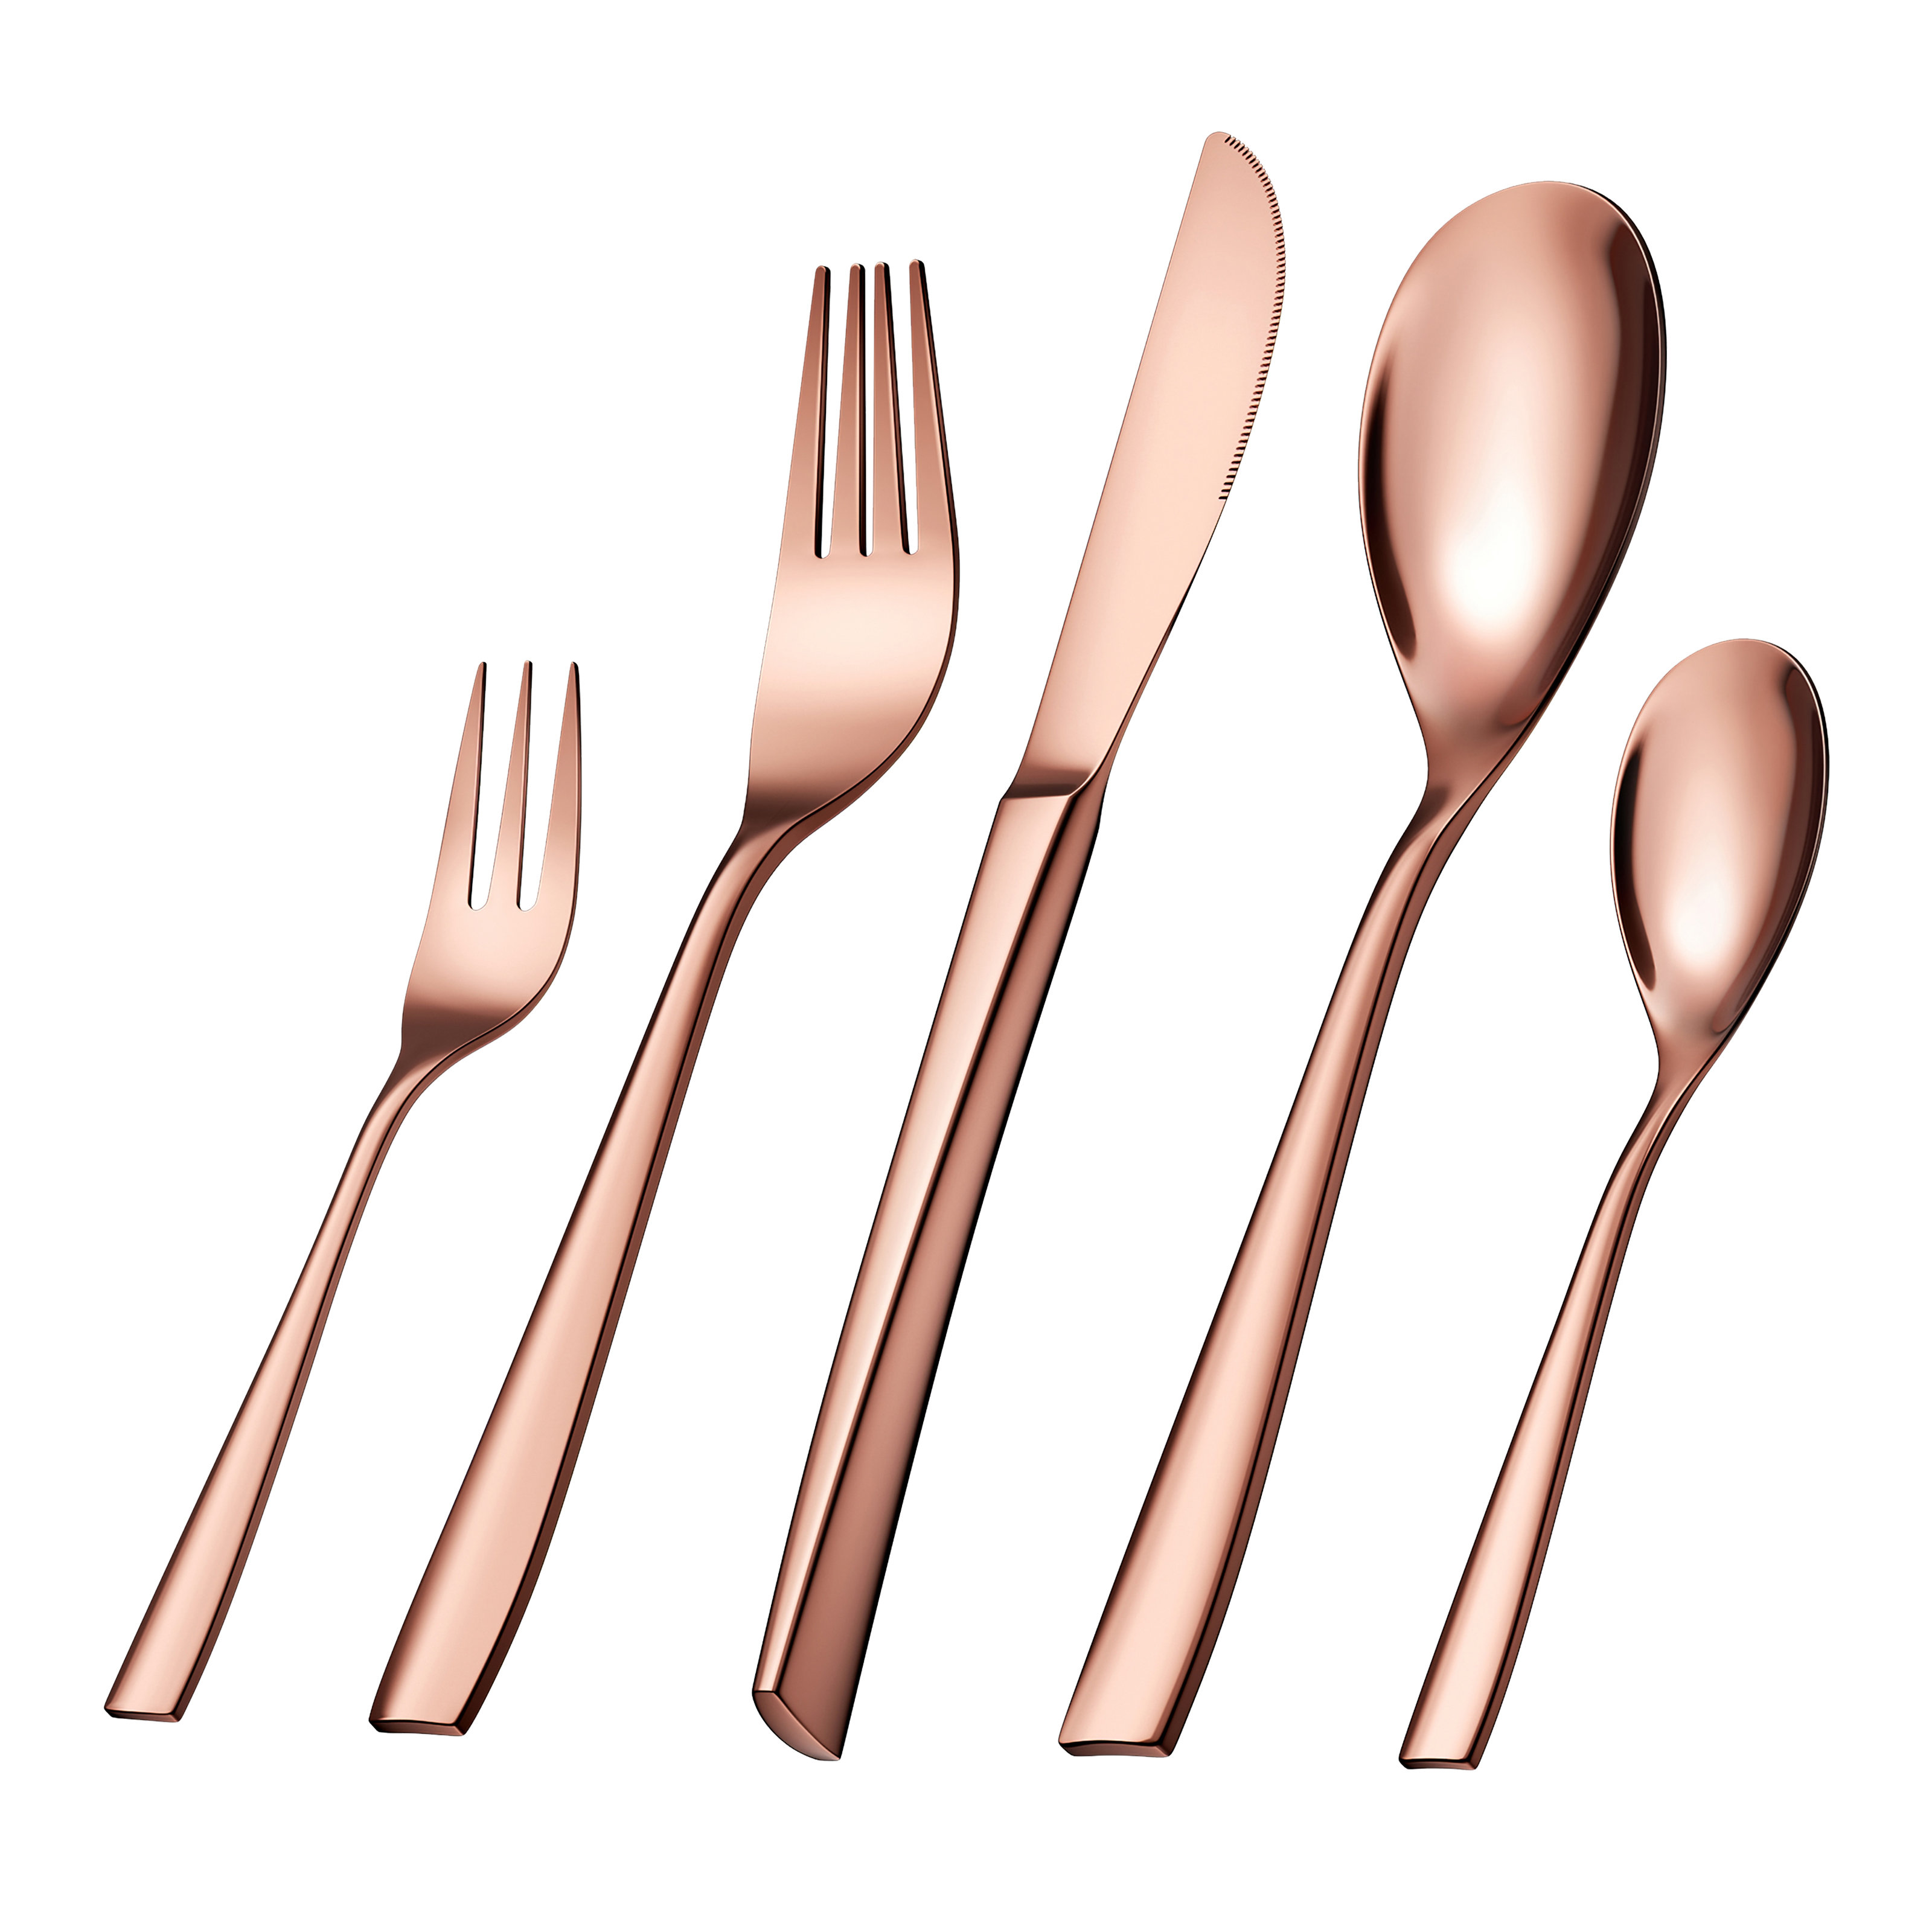 Mirror Polished Finish Dishwaser Safe Fork Set Elegant Life Stainless Steel Cutlery 16 Pieces Table Forks Dinner Forks 